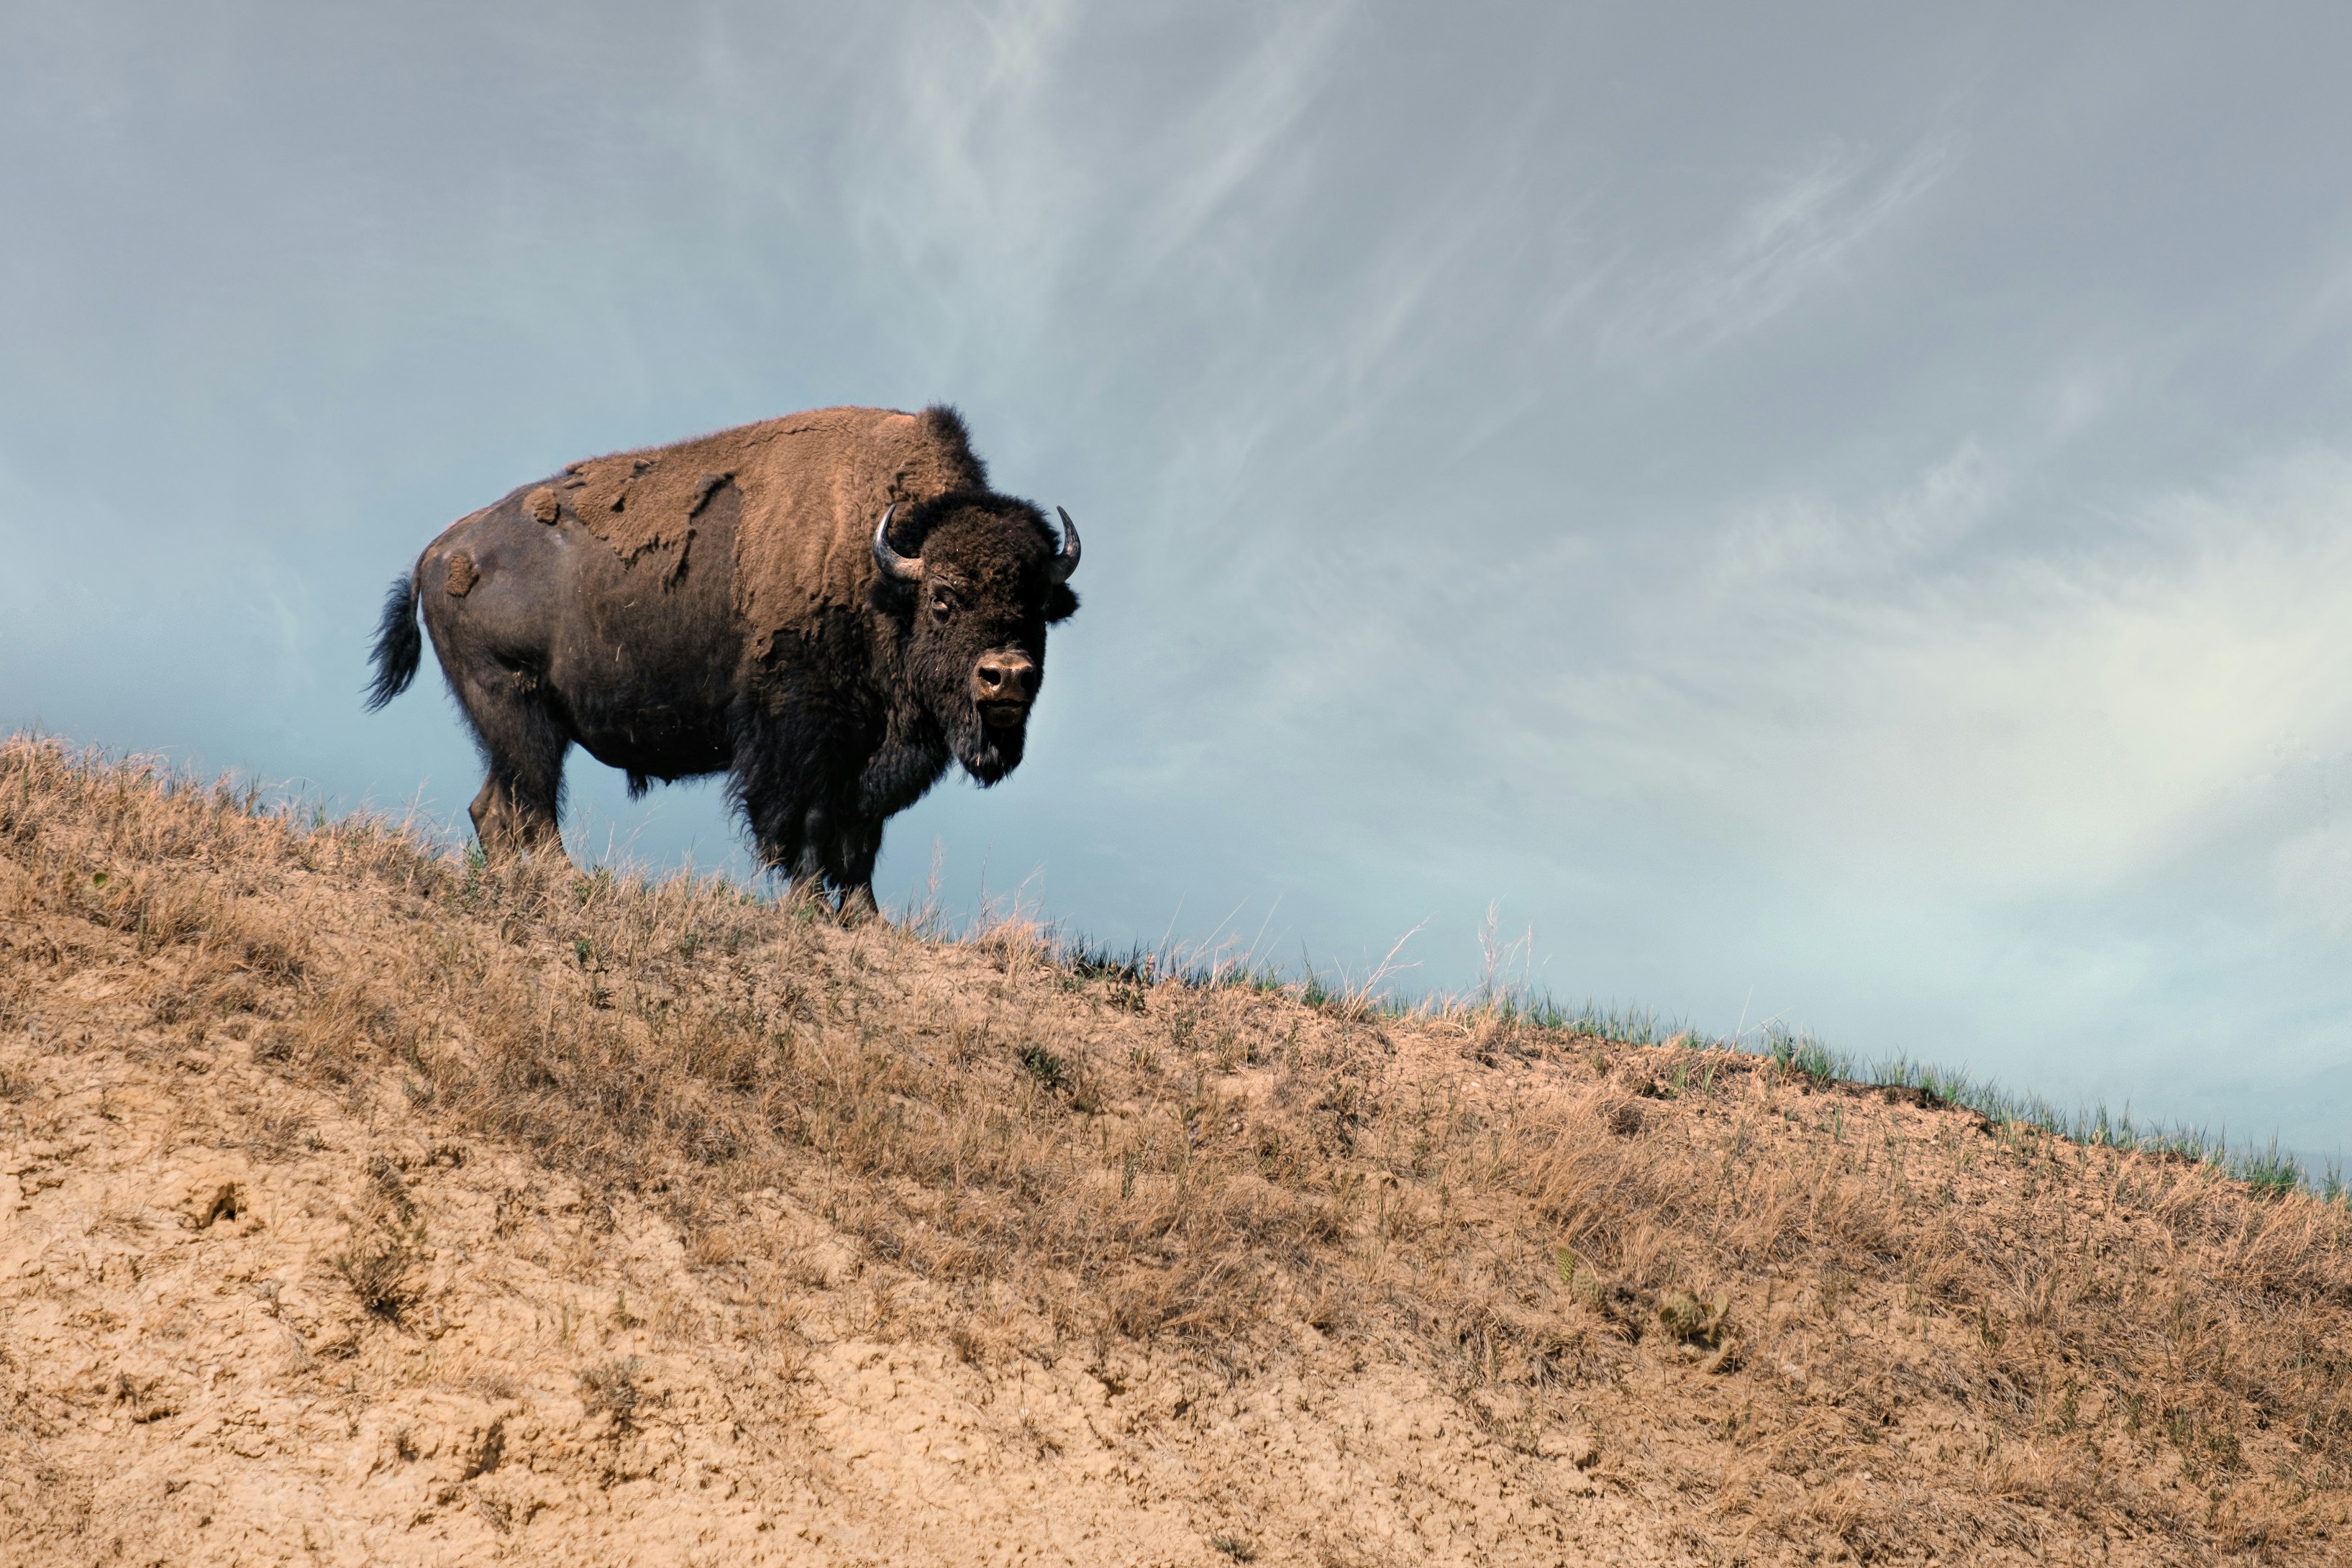 Where the Buffalo Roam, Endangered Prairies Thrive